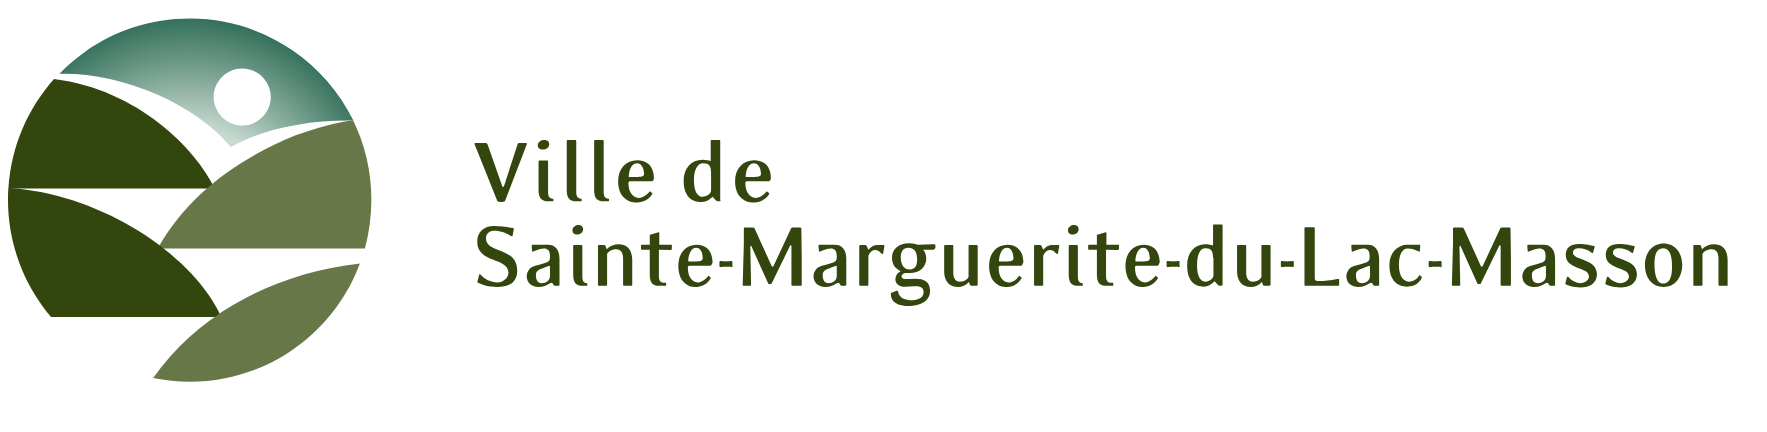 Logo de la ville de Sainte-Marguerite-du-Lac-Masson